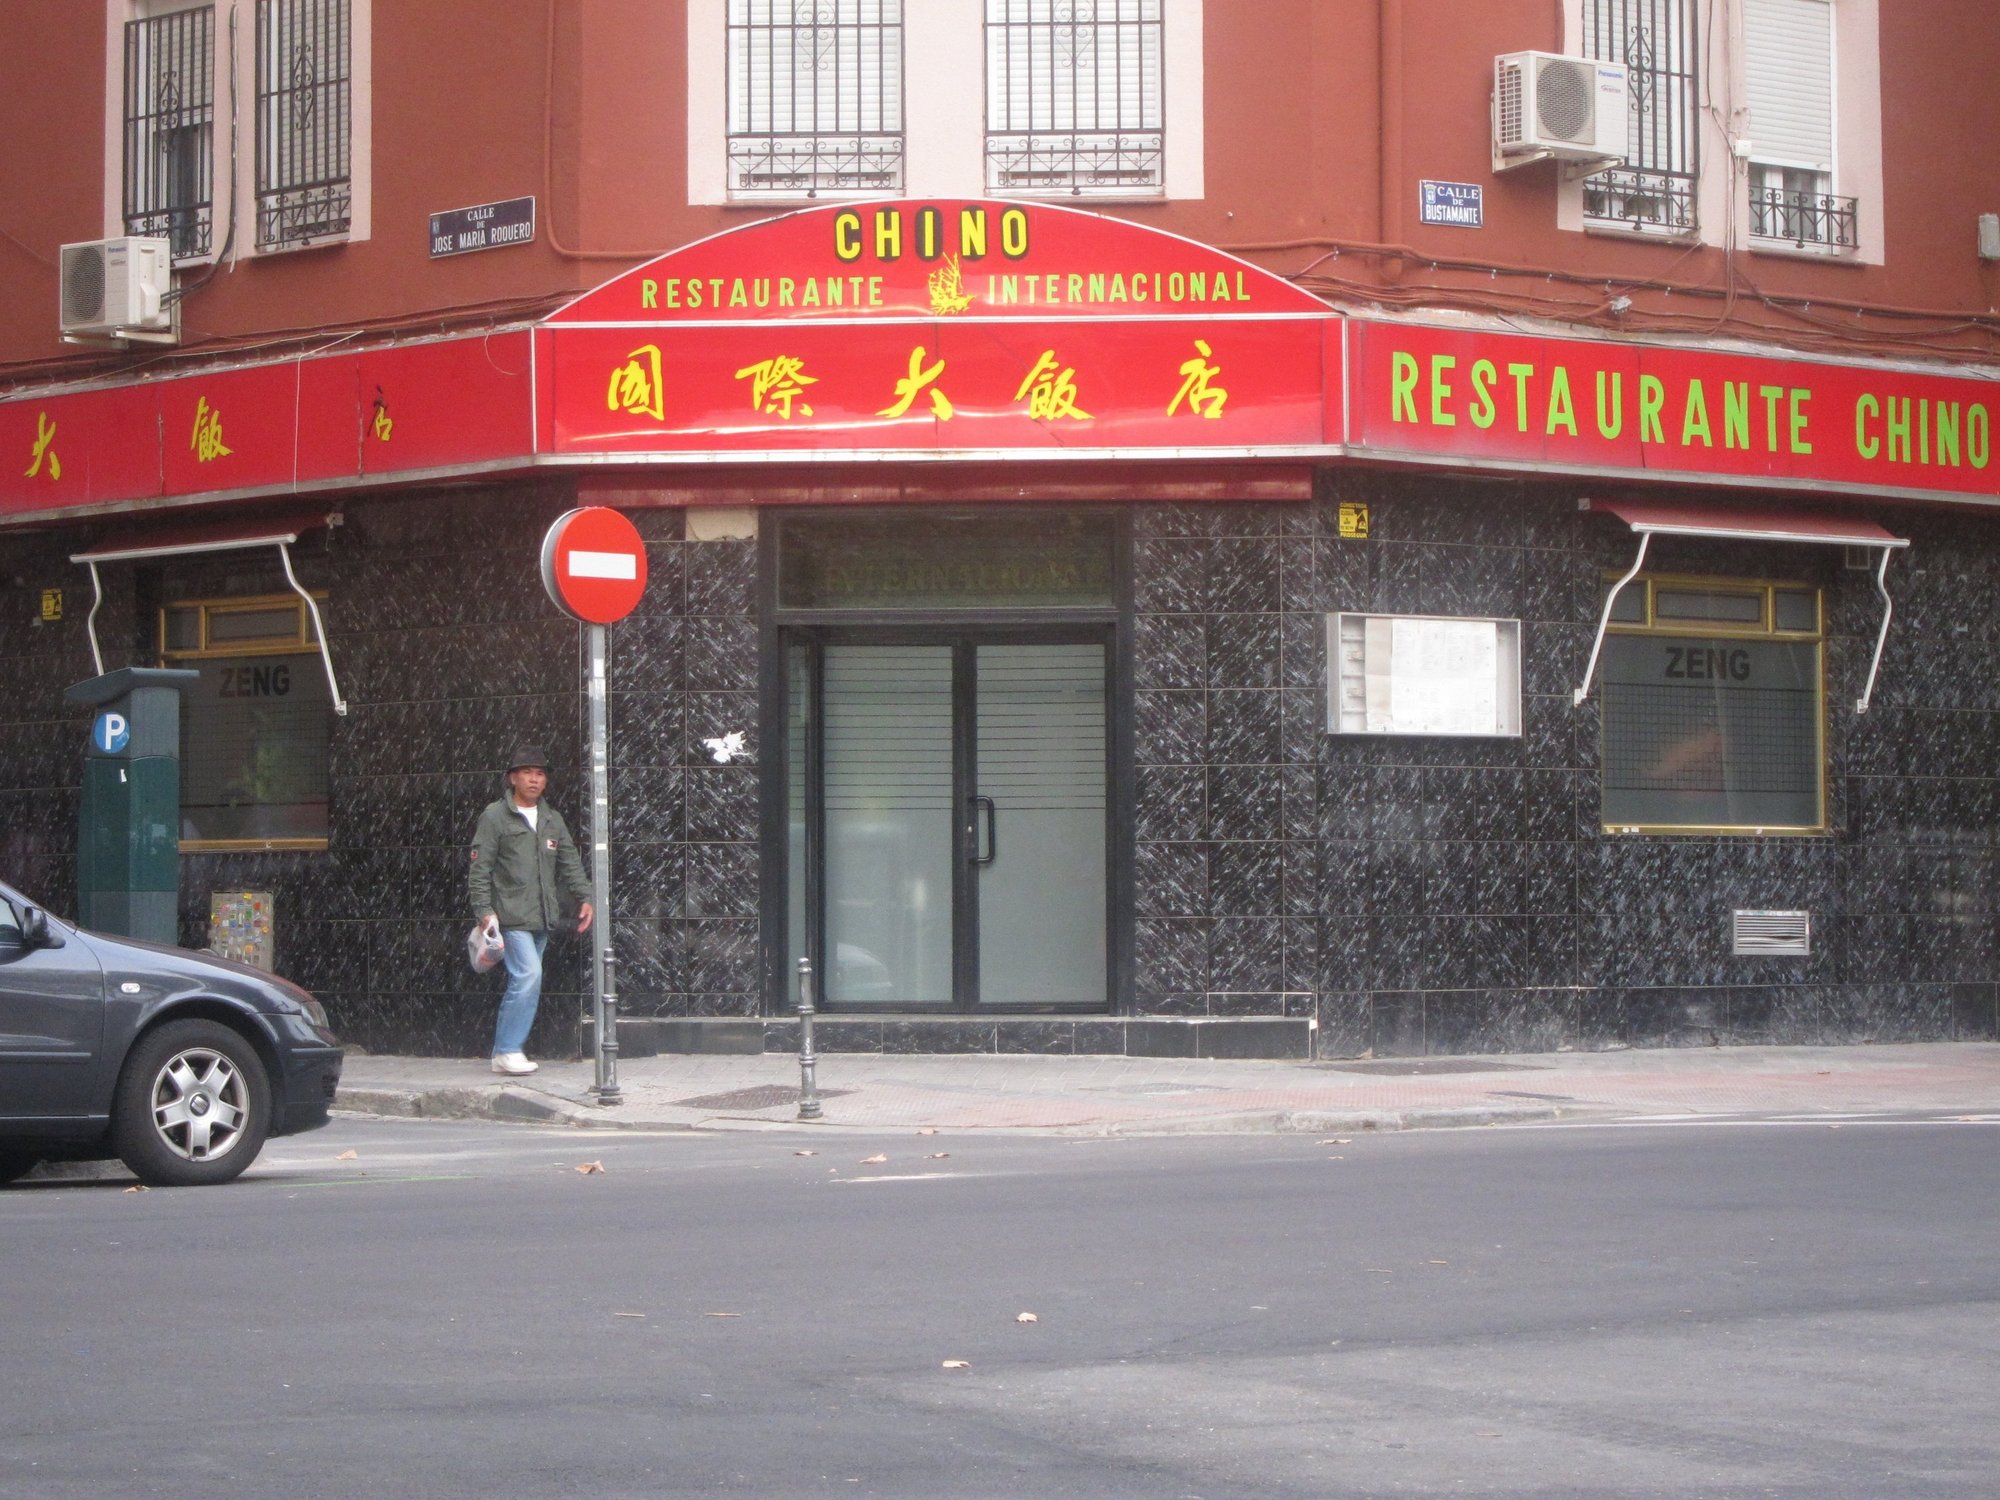 Los inmigrantes chinos rozan el pleno empleo en Madrid, con sólo un 5% de paro